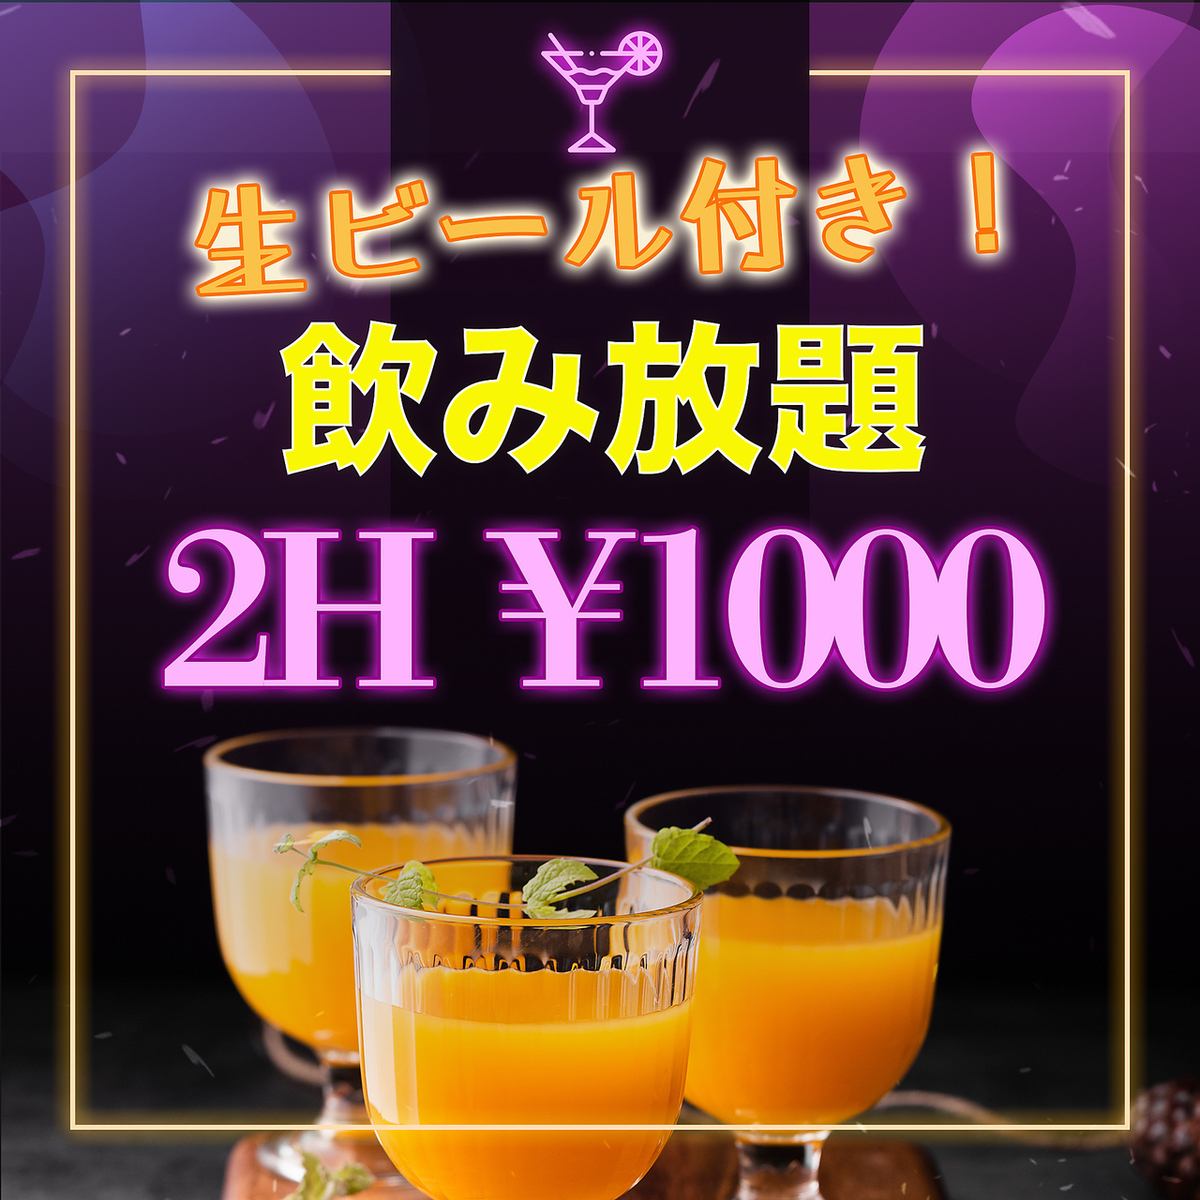 有生啤酒！无限畅饮！无限畅饮 120 分钟 1000 日元 S 计划！